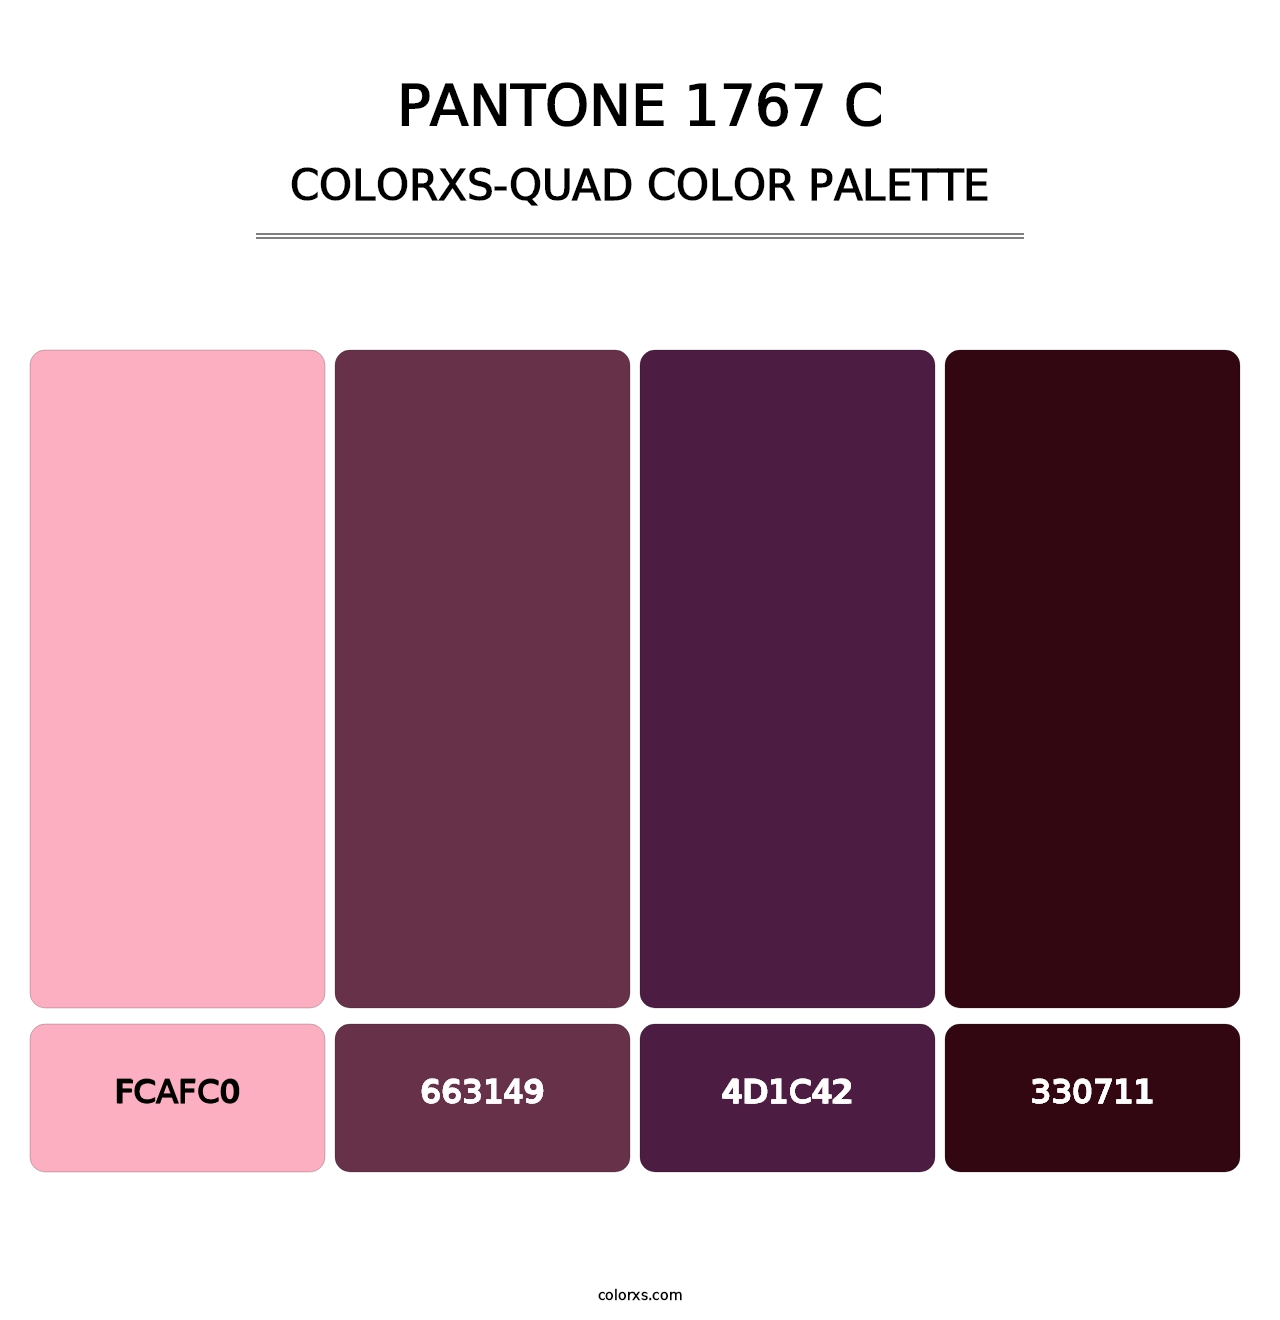 PANTONE 1767 C - Colorxs Quad Palette